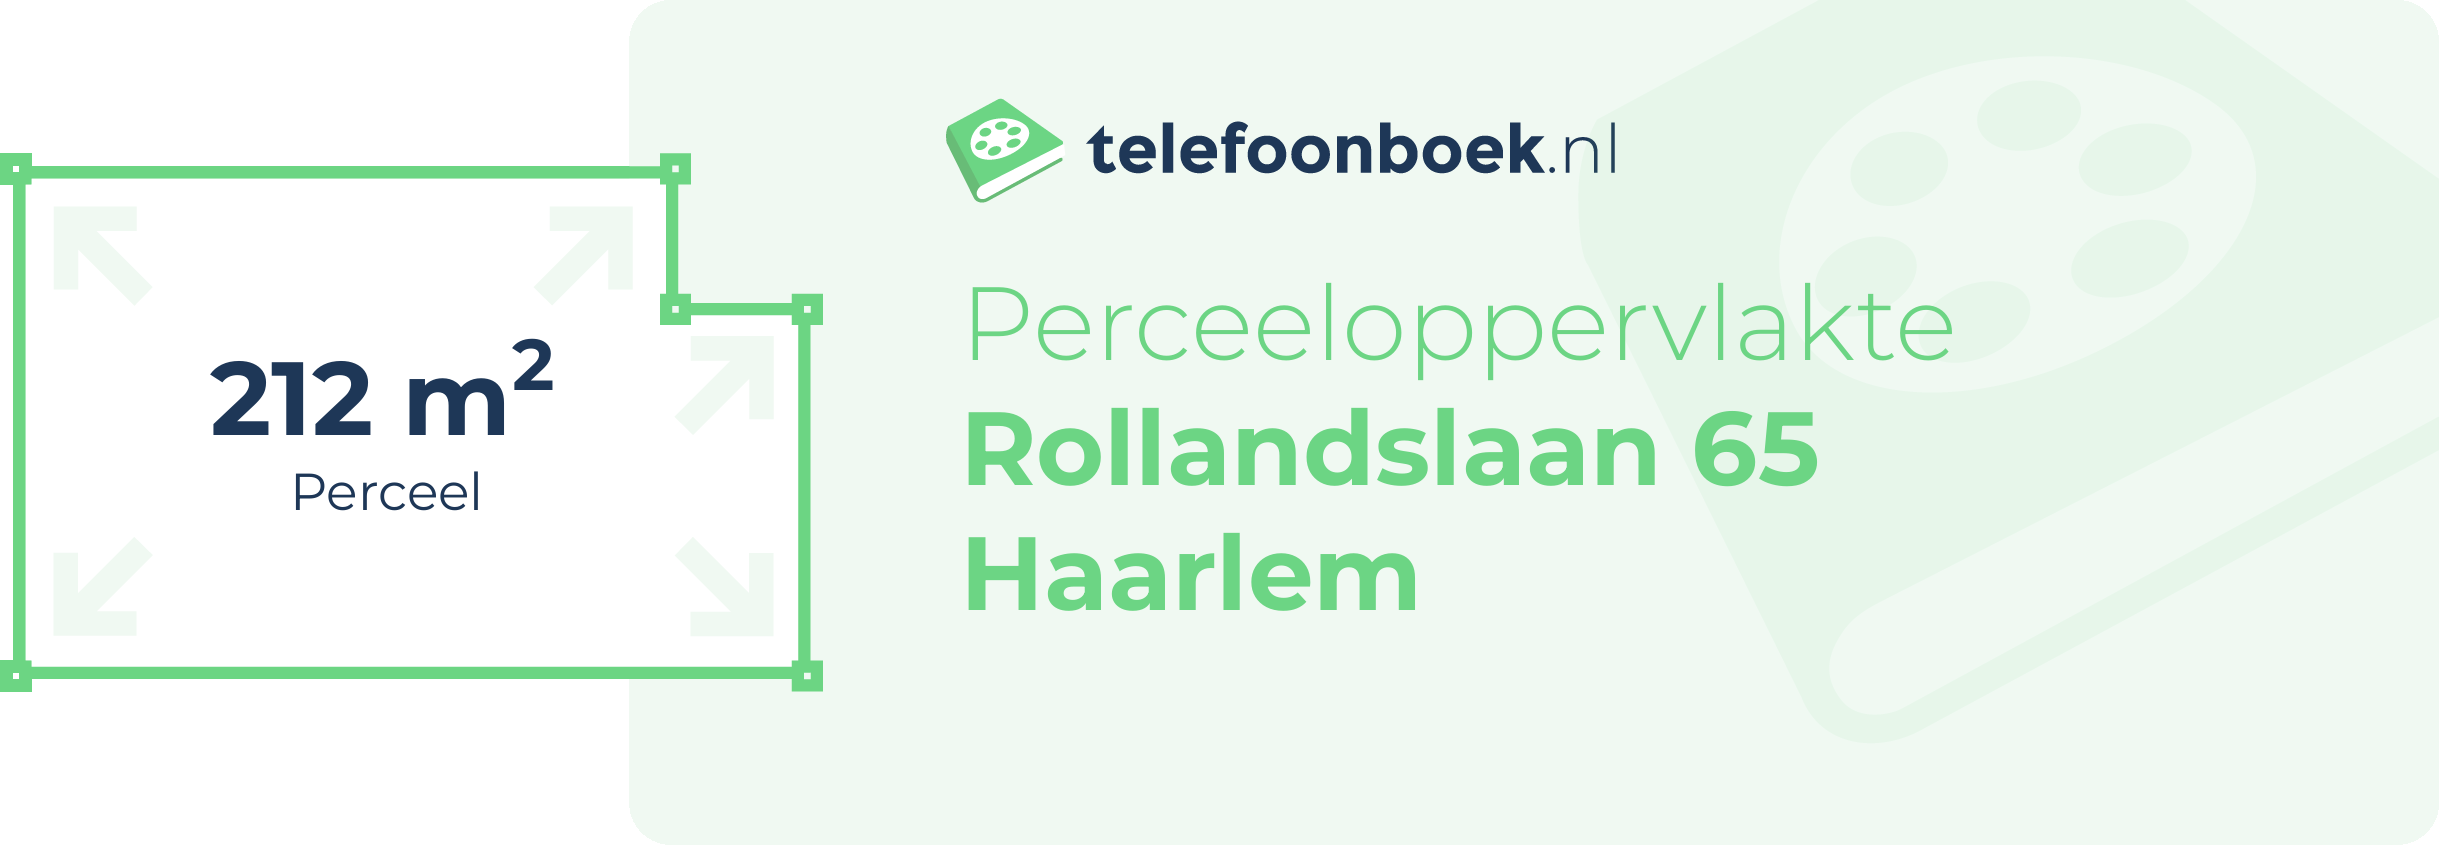 Perceeloppervlakte Rollandslaan 65 Haarlem